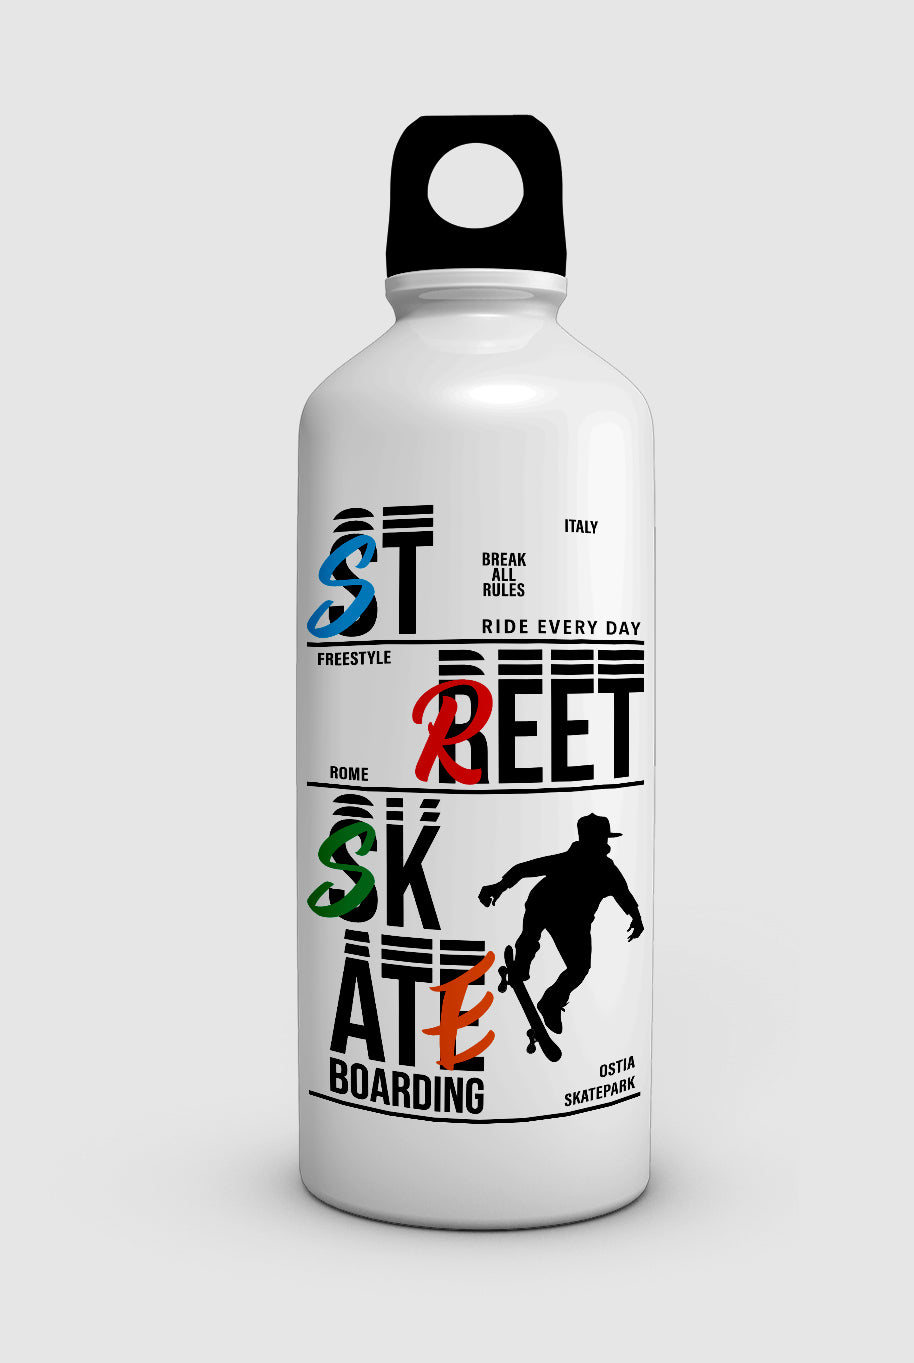 "STREET SKATE BOARDING" water bottle